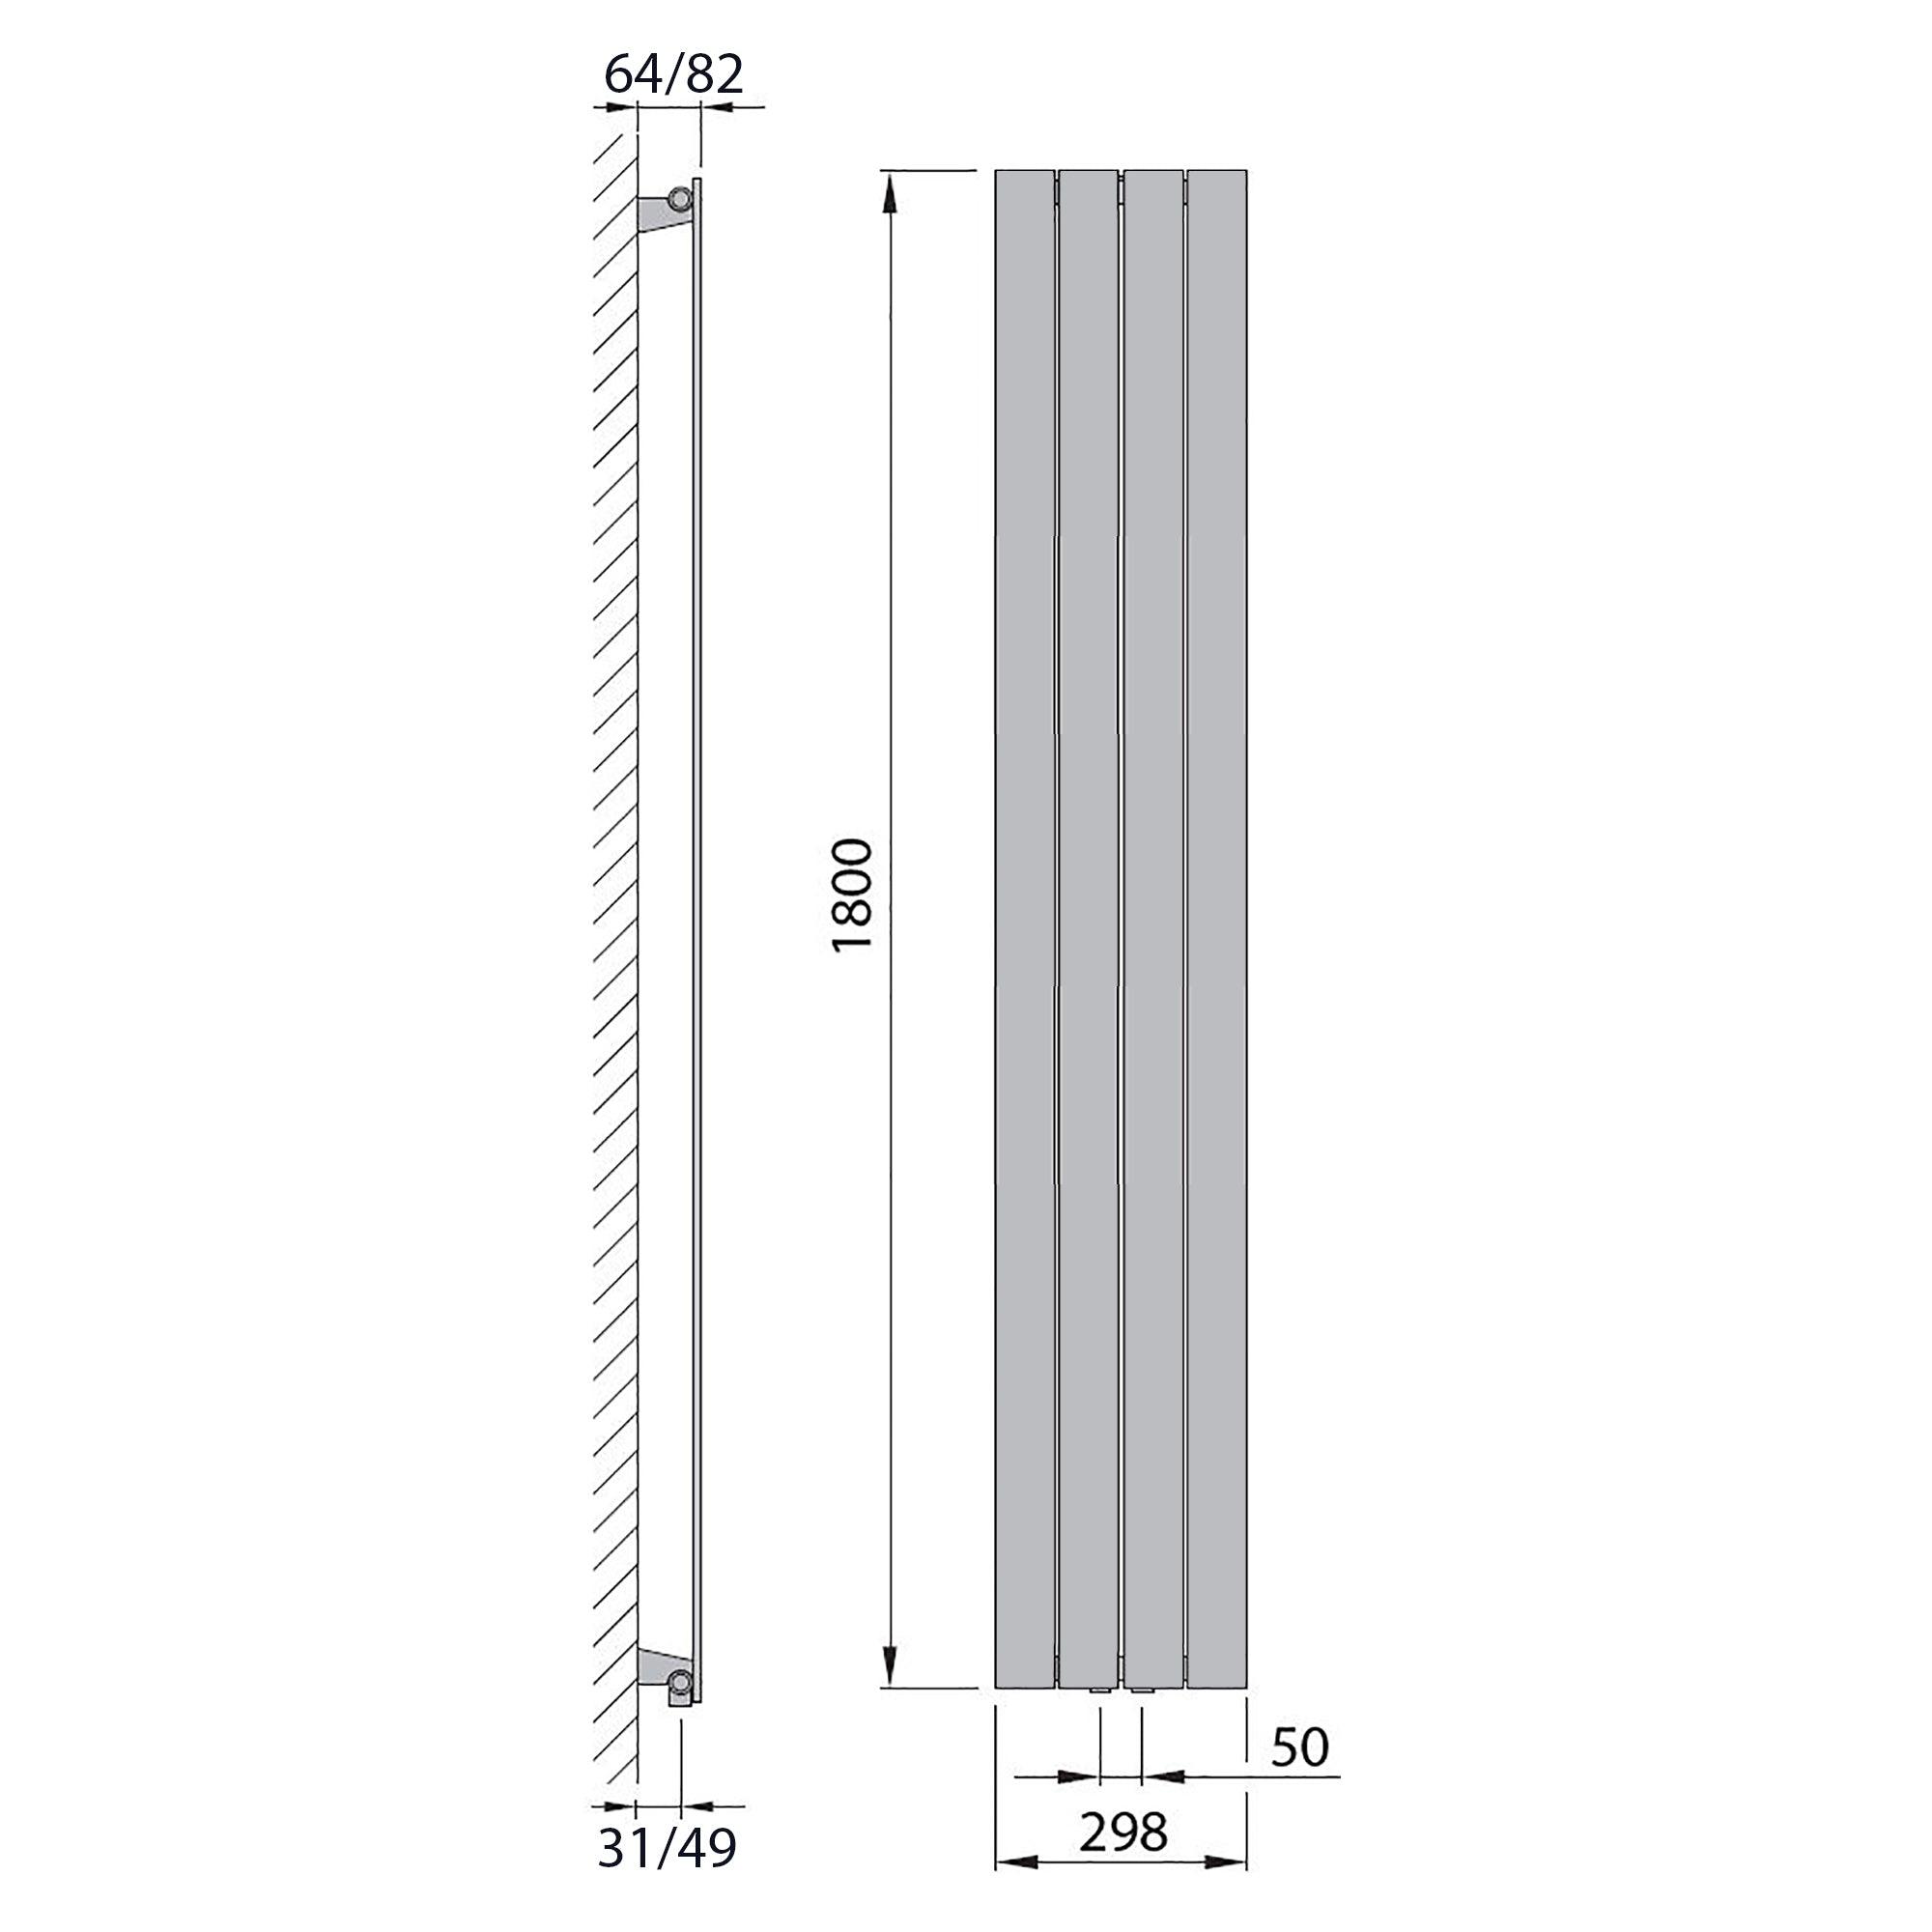 Design Paneelheizkörper vertikal 1800 x 298 weiß Heizkörper Badheizkörper flach Badezimmer Heizung technische Zeichnung - heizkoerper.shop